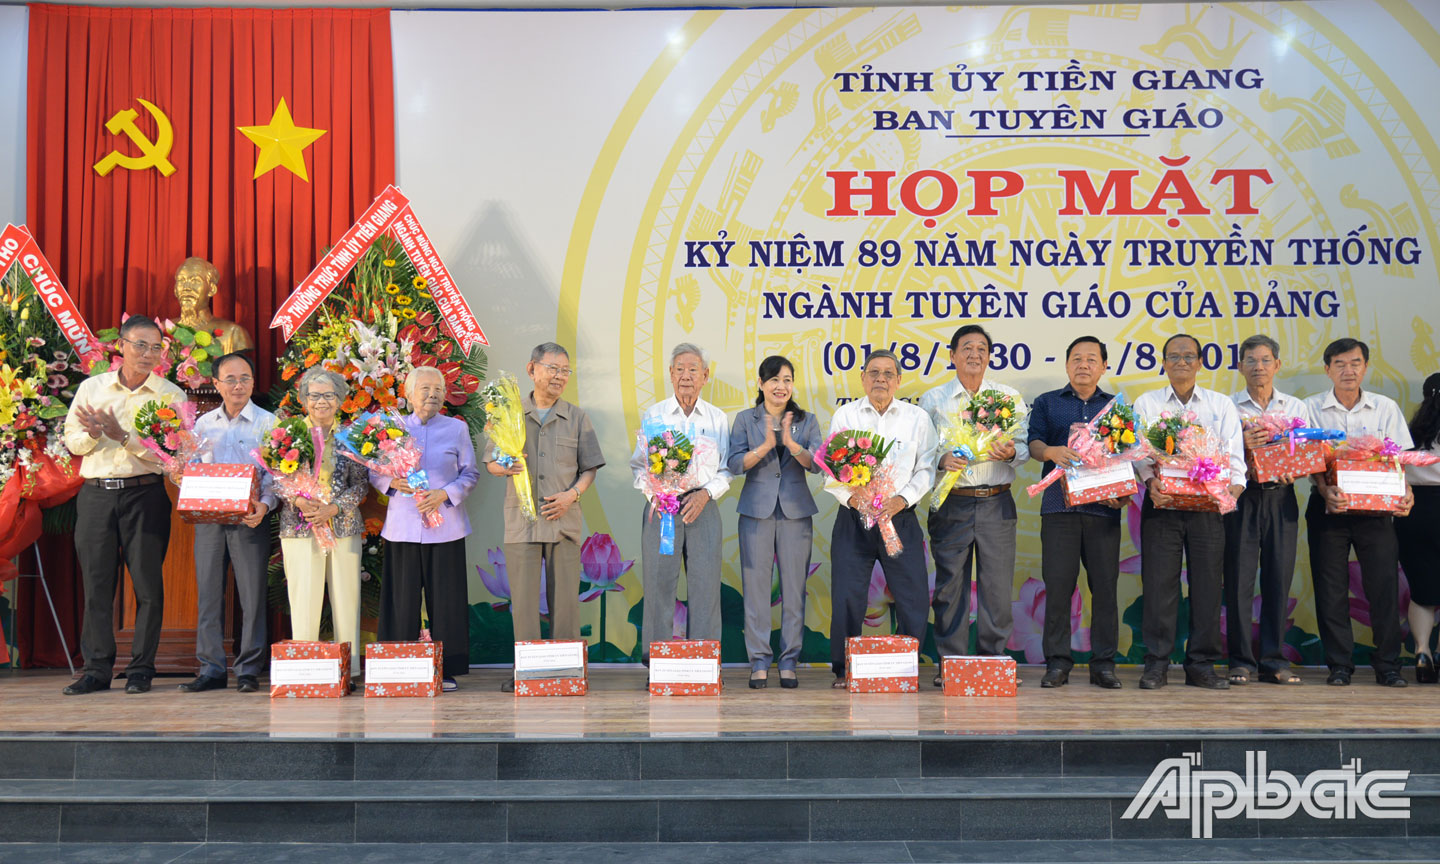 Lãnh đạo Ban Tuyên giáo Tỉnh ủy tặng hoa và quà cho các đồng chí nguyên lãnh đạo ngành Tuyên giáo của tỉnh nhân kỷ niệm 89 năm Ngày Truyền thống Tuyên giáo của Đảng.